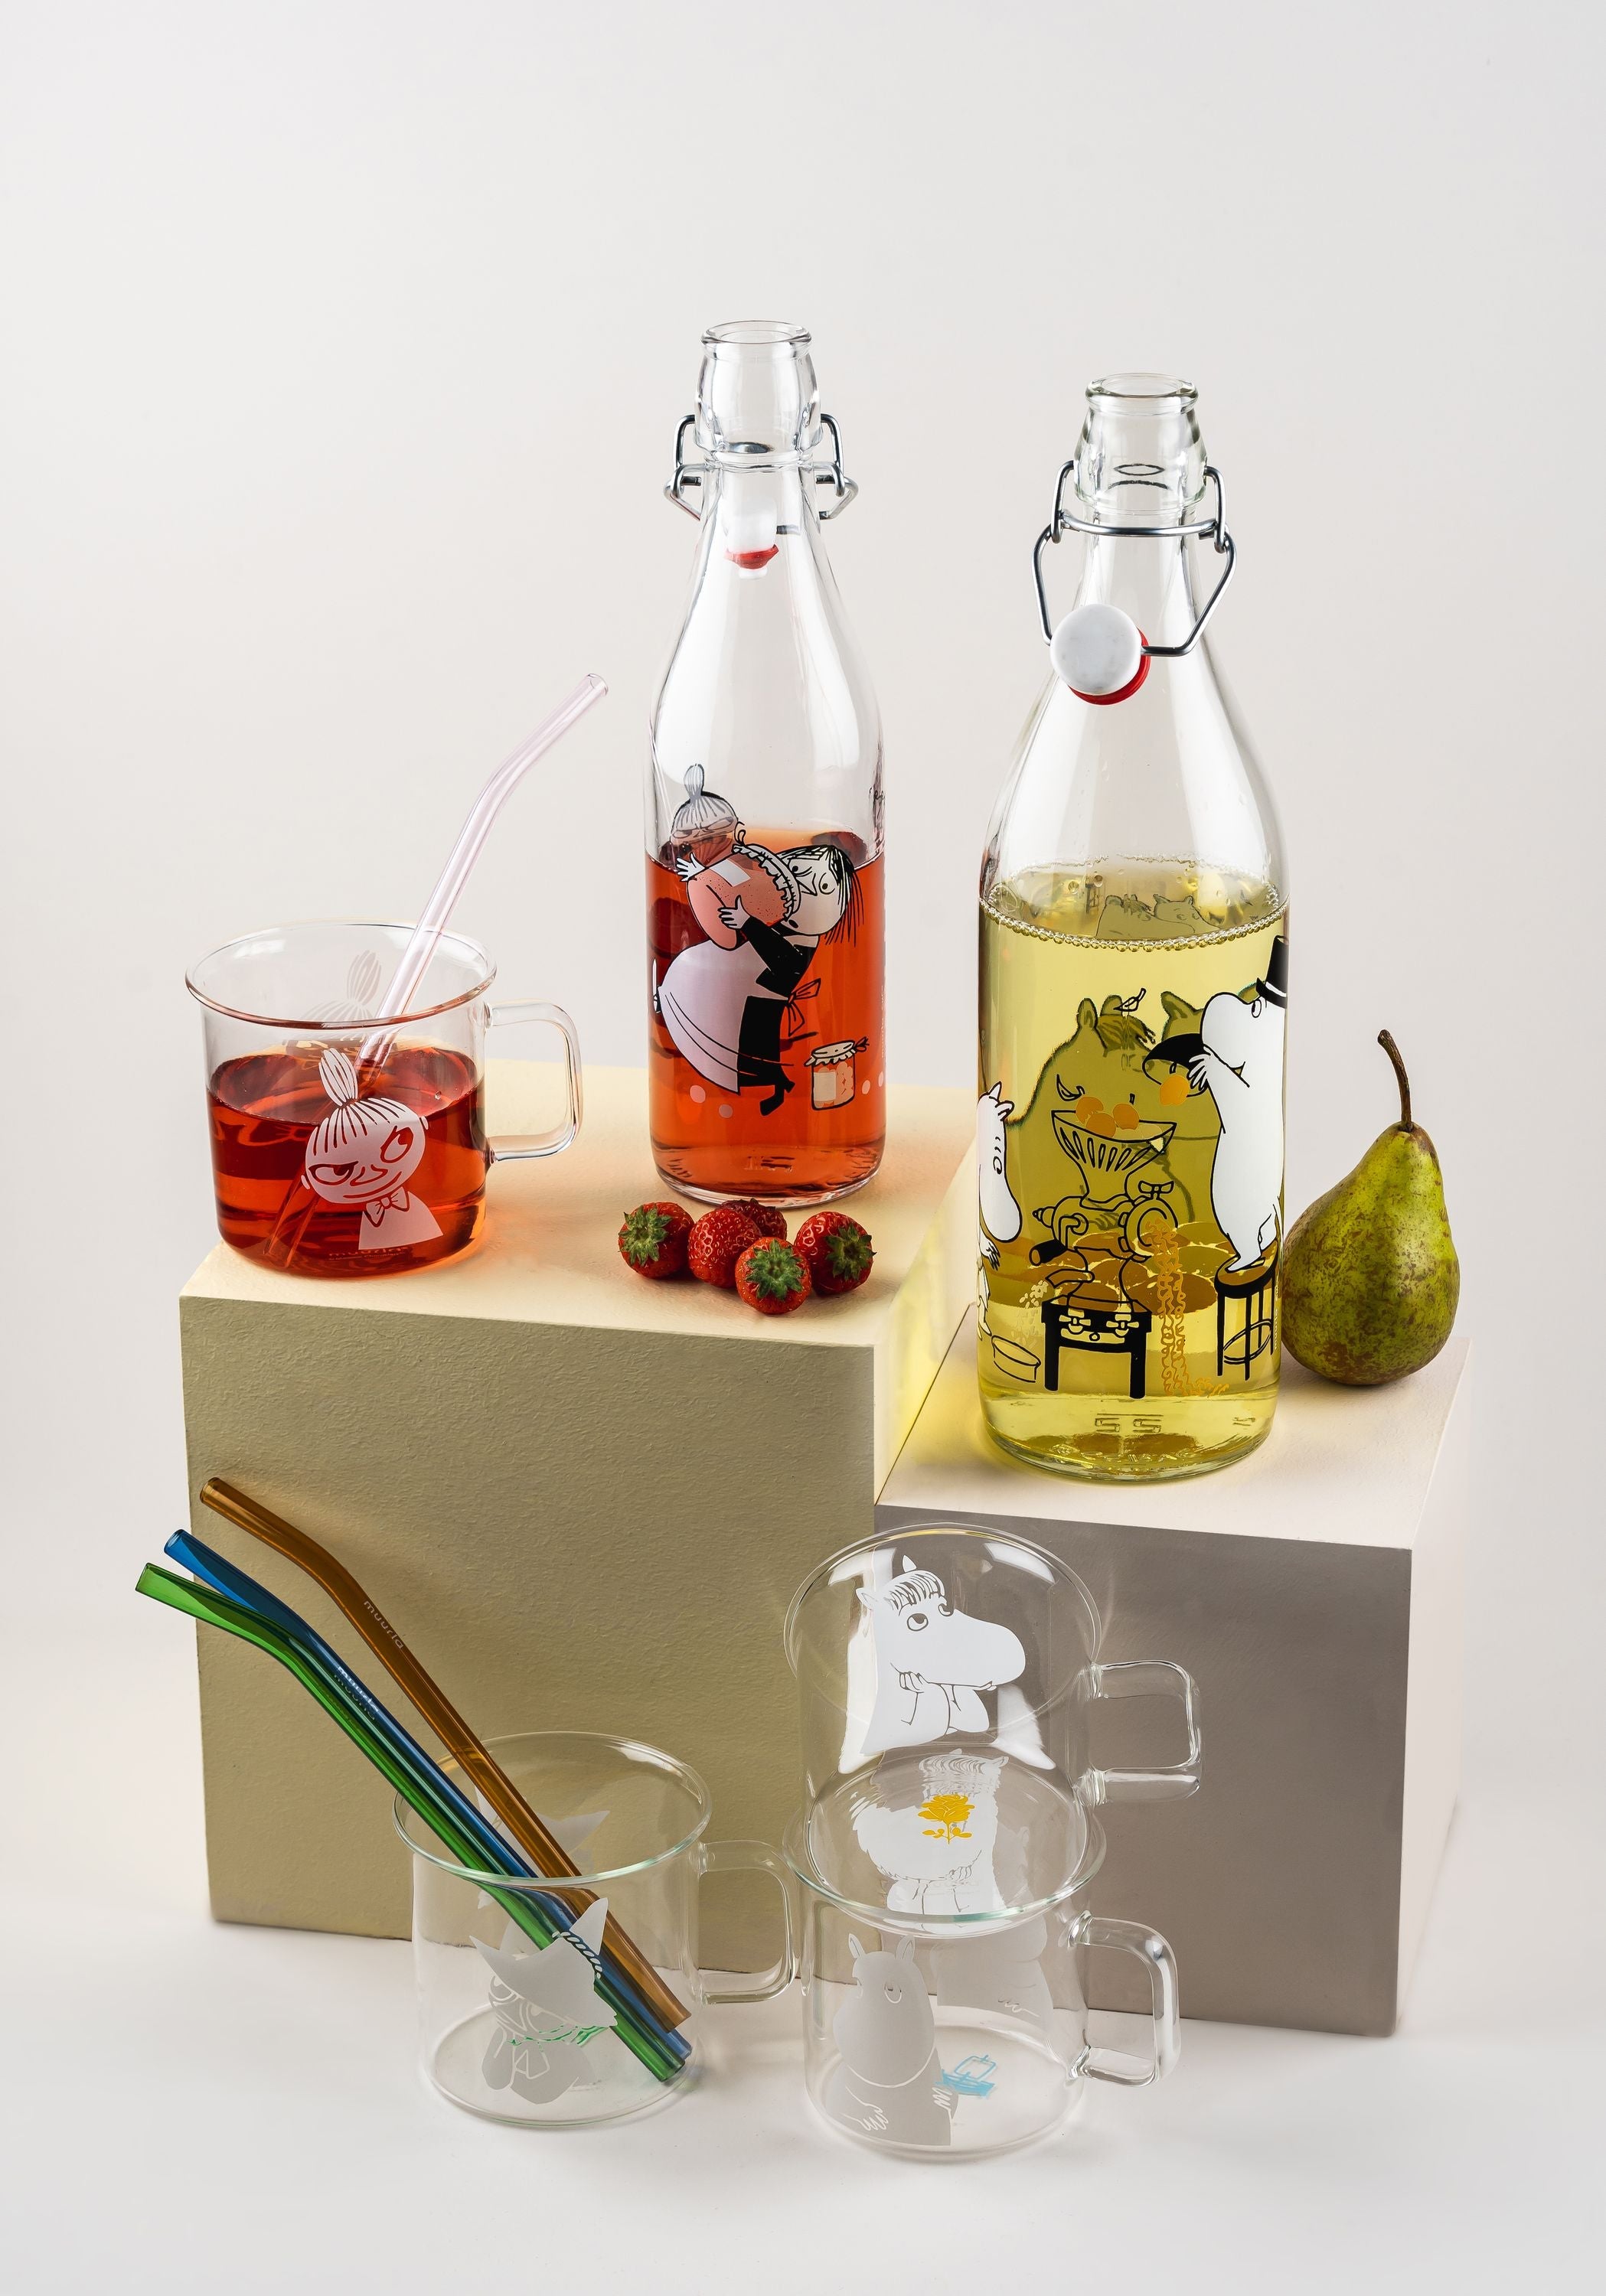 Botella de vidrio de Muurla Moomin, frutas